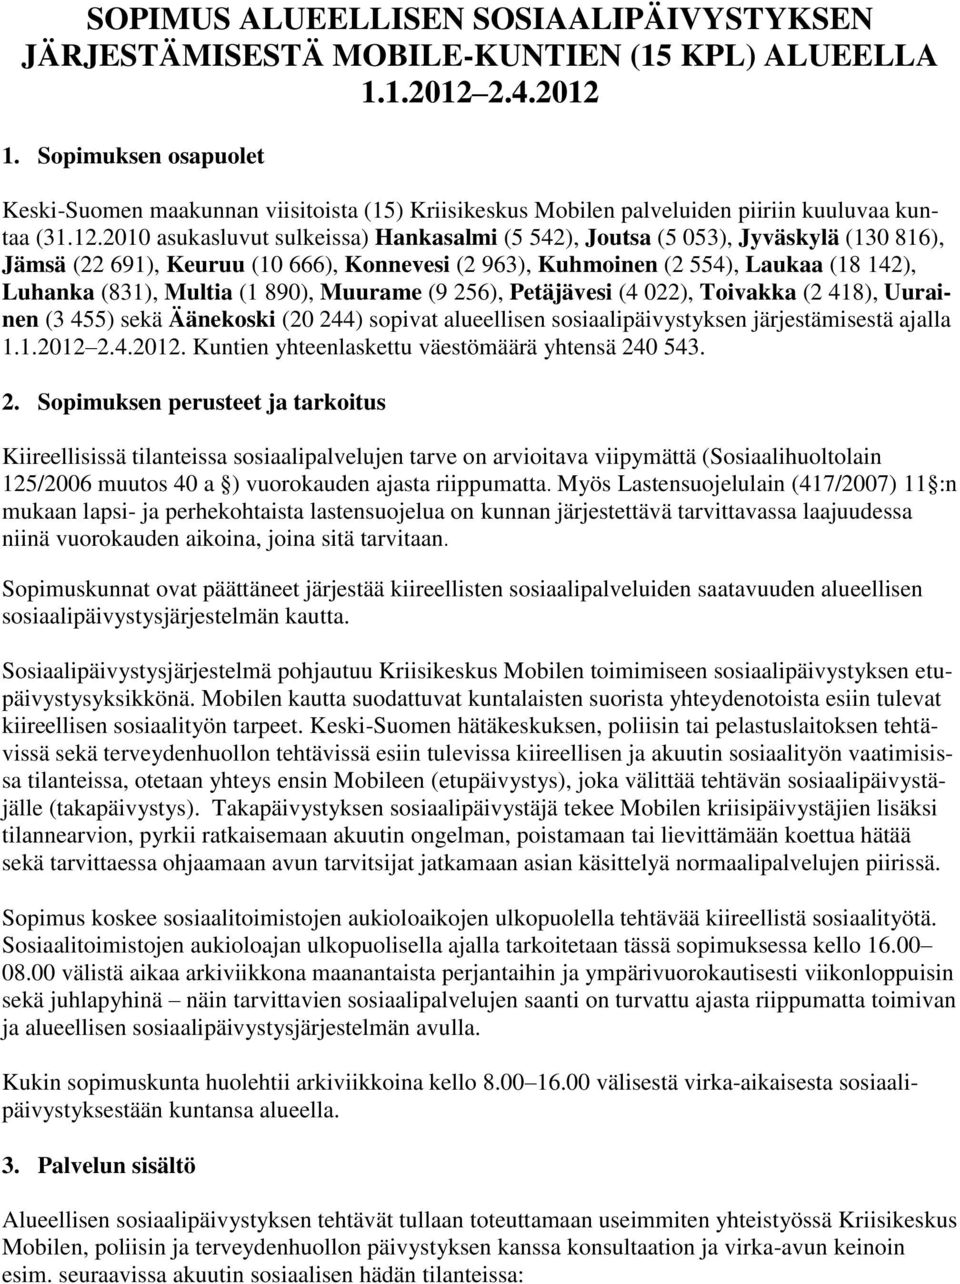 2010 asukasluvut sulkeissa) Hankasalmi (5 542), Joutsa (5 053), Jyväskylä (130 816), Jämsä (22 691), Keuruu (10 666), Konnevesi (2 963), Kuhmoinen (2 554), Laukaa (18 142), Luhanka (831), Multia (1